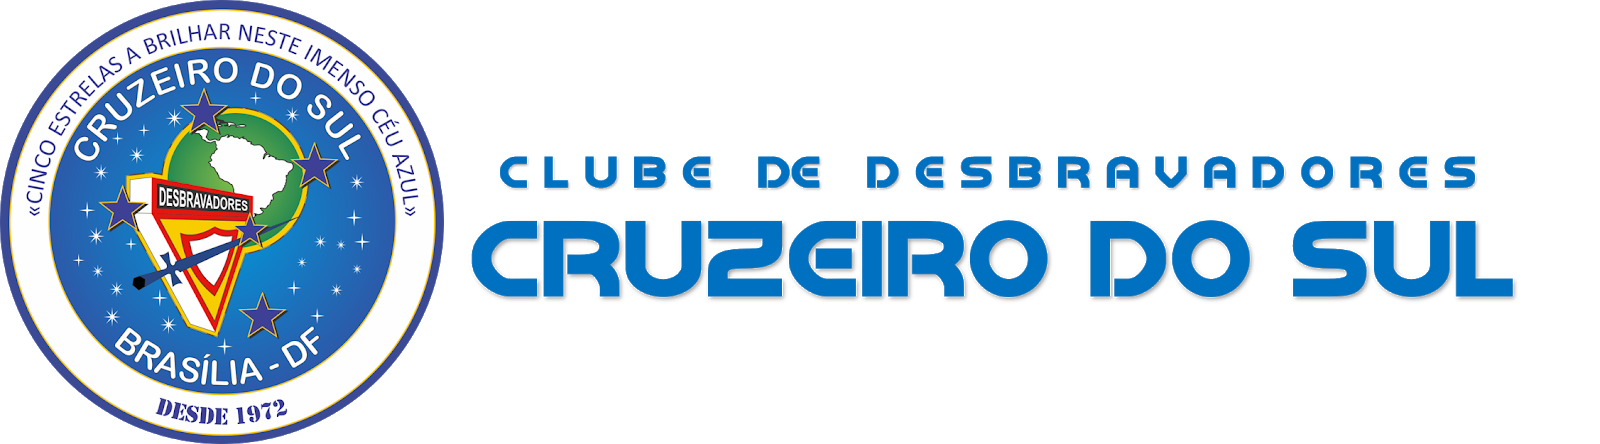 CLUBE DE DESBRAVADORES CRUZEIRO DO SUL